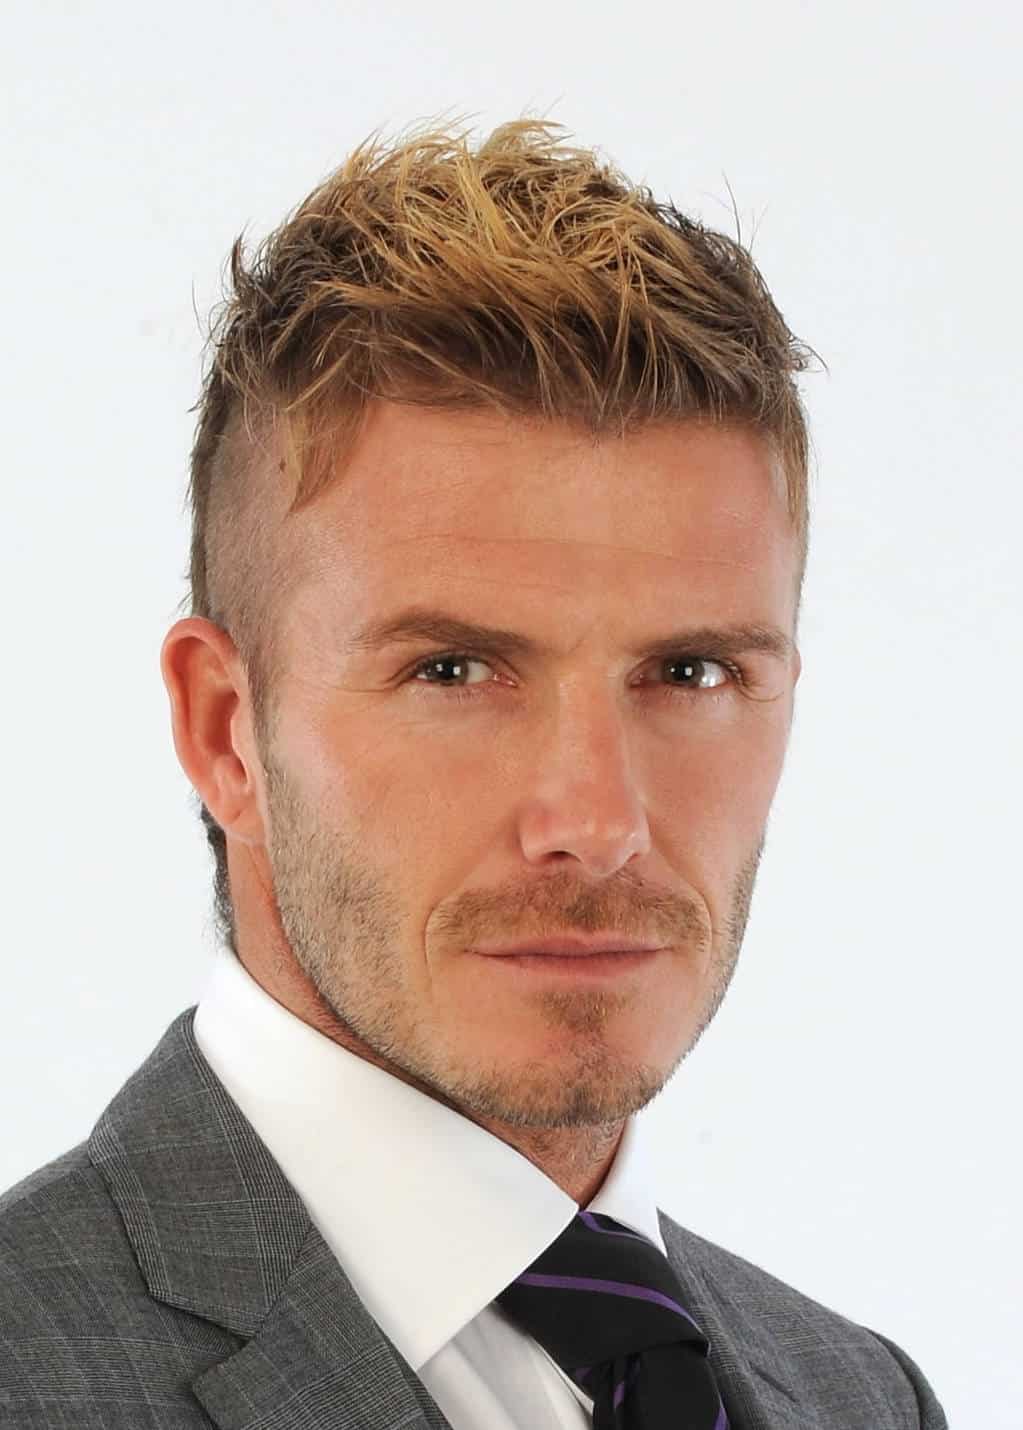 45 Best David Beckham Hair Ideas All Hairstyles Till 2019